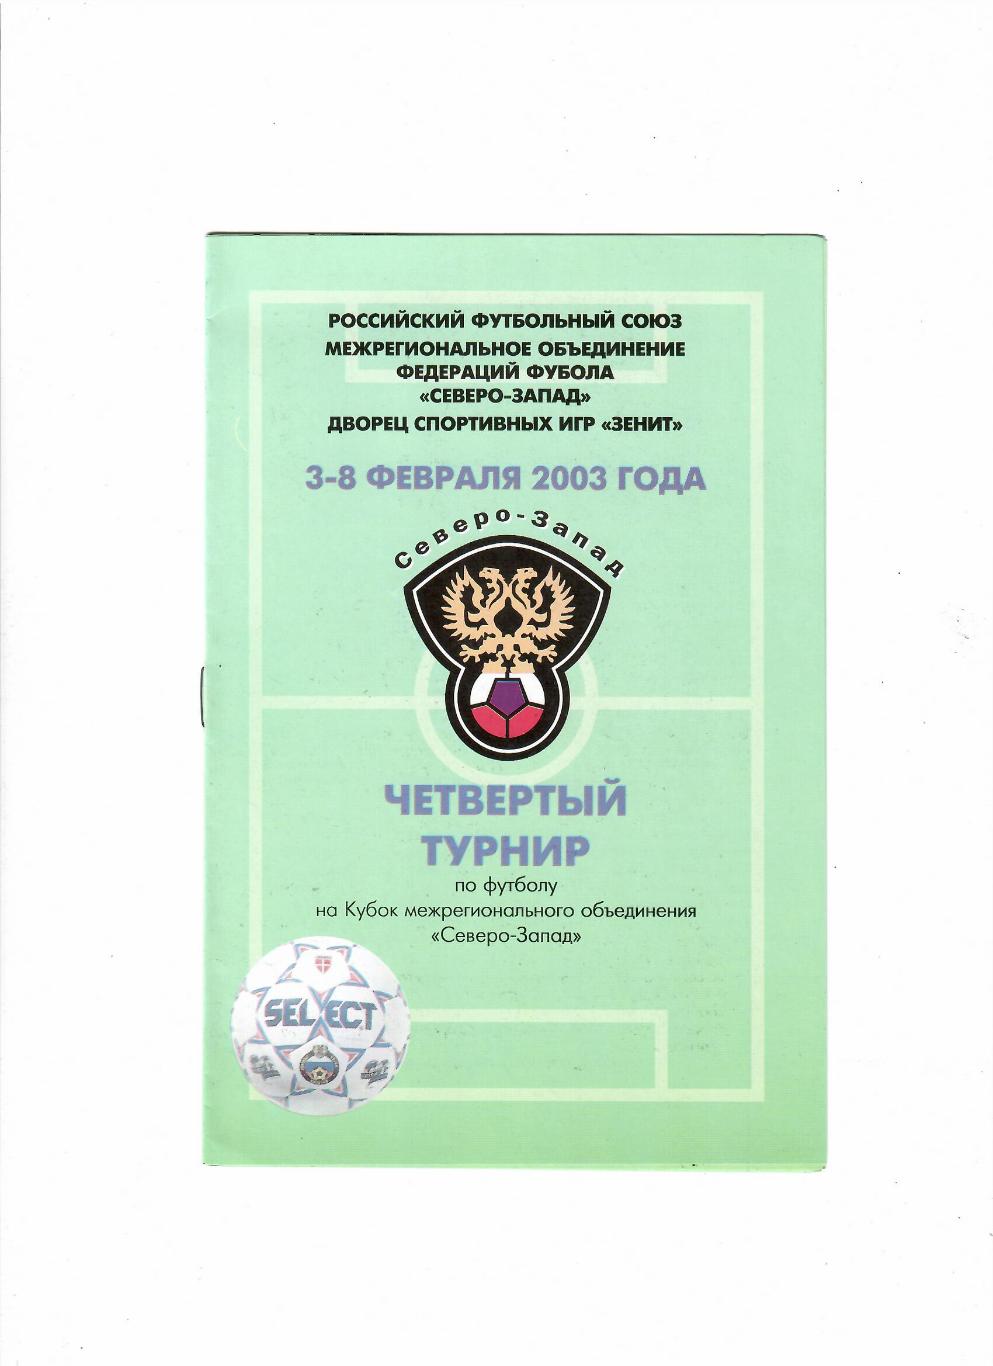 Четвертый турнир на кубок межрегионального объединения Северо-Запад 2003